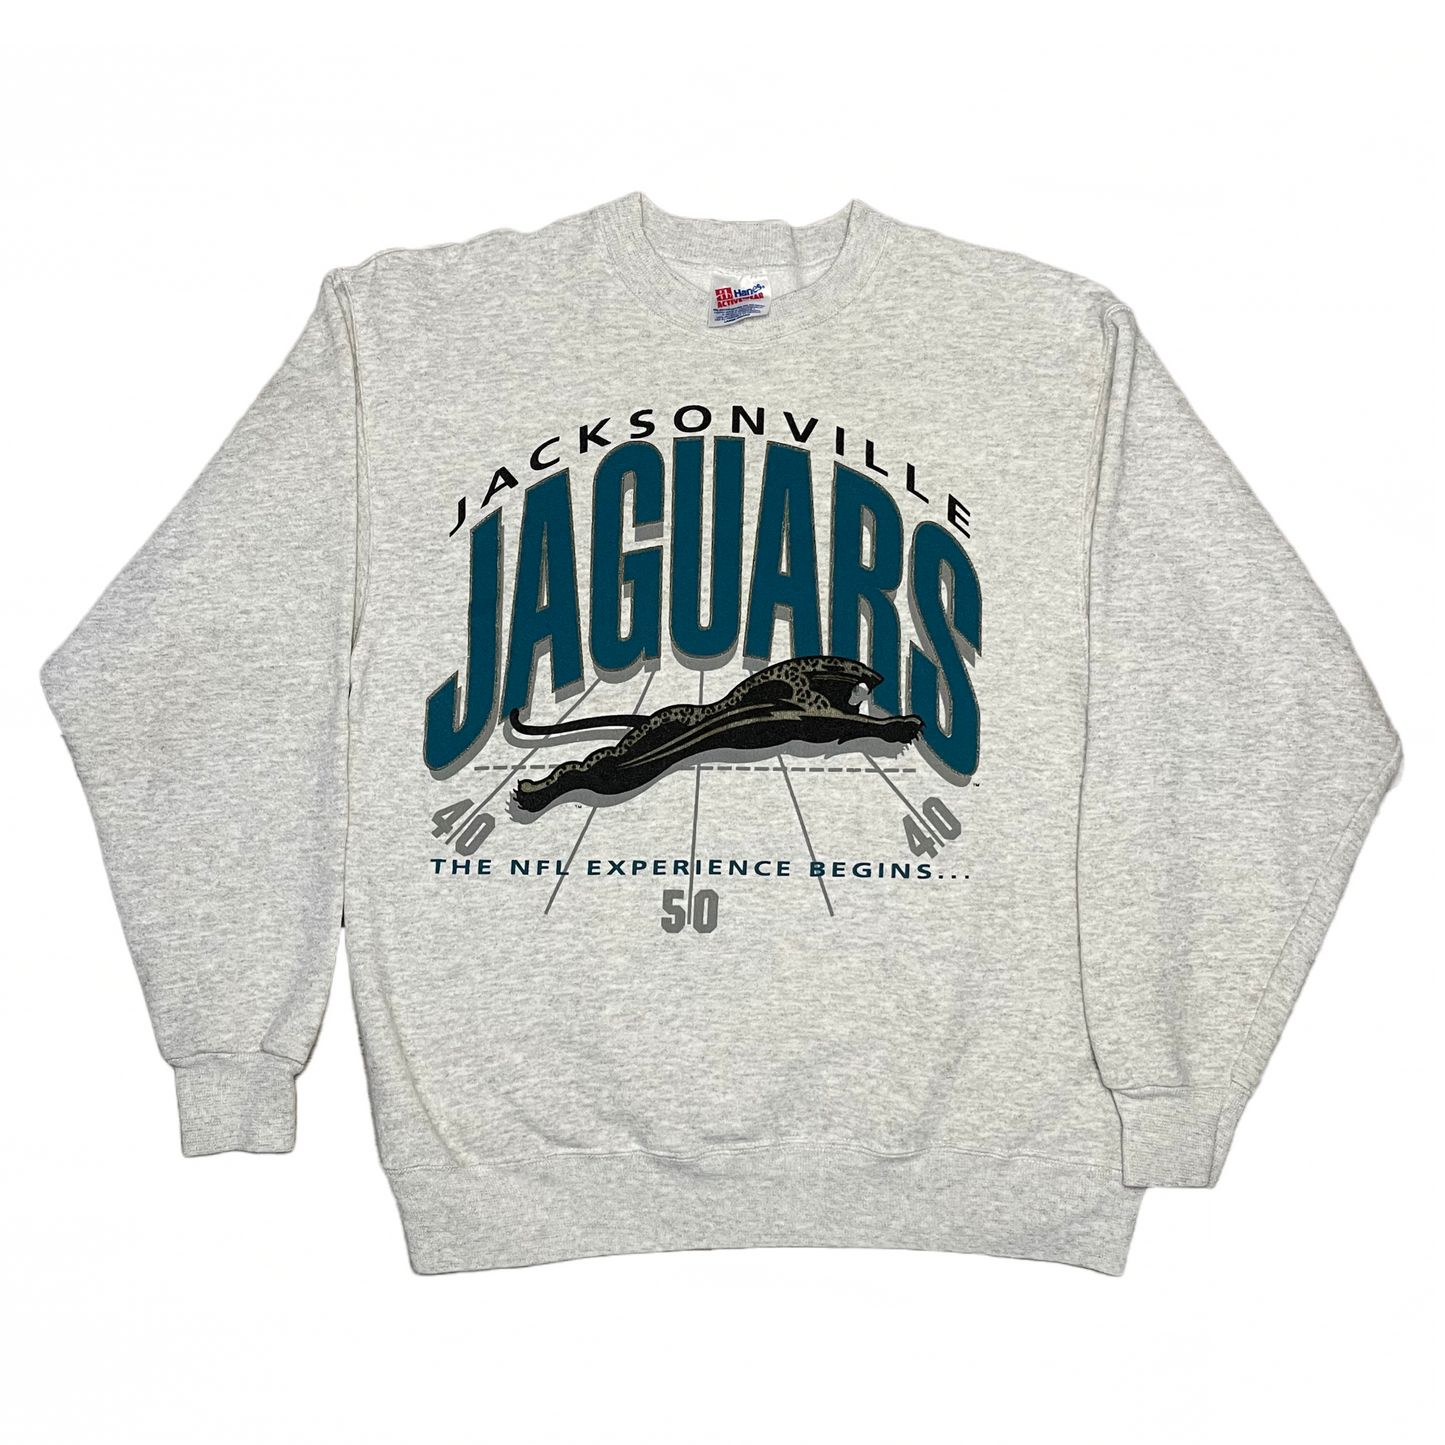 Vintage Jacksonville Jaguars banned logo sweatshirt size MEDIUM